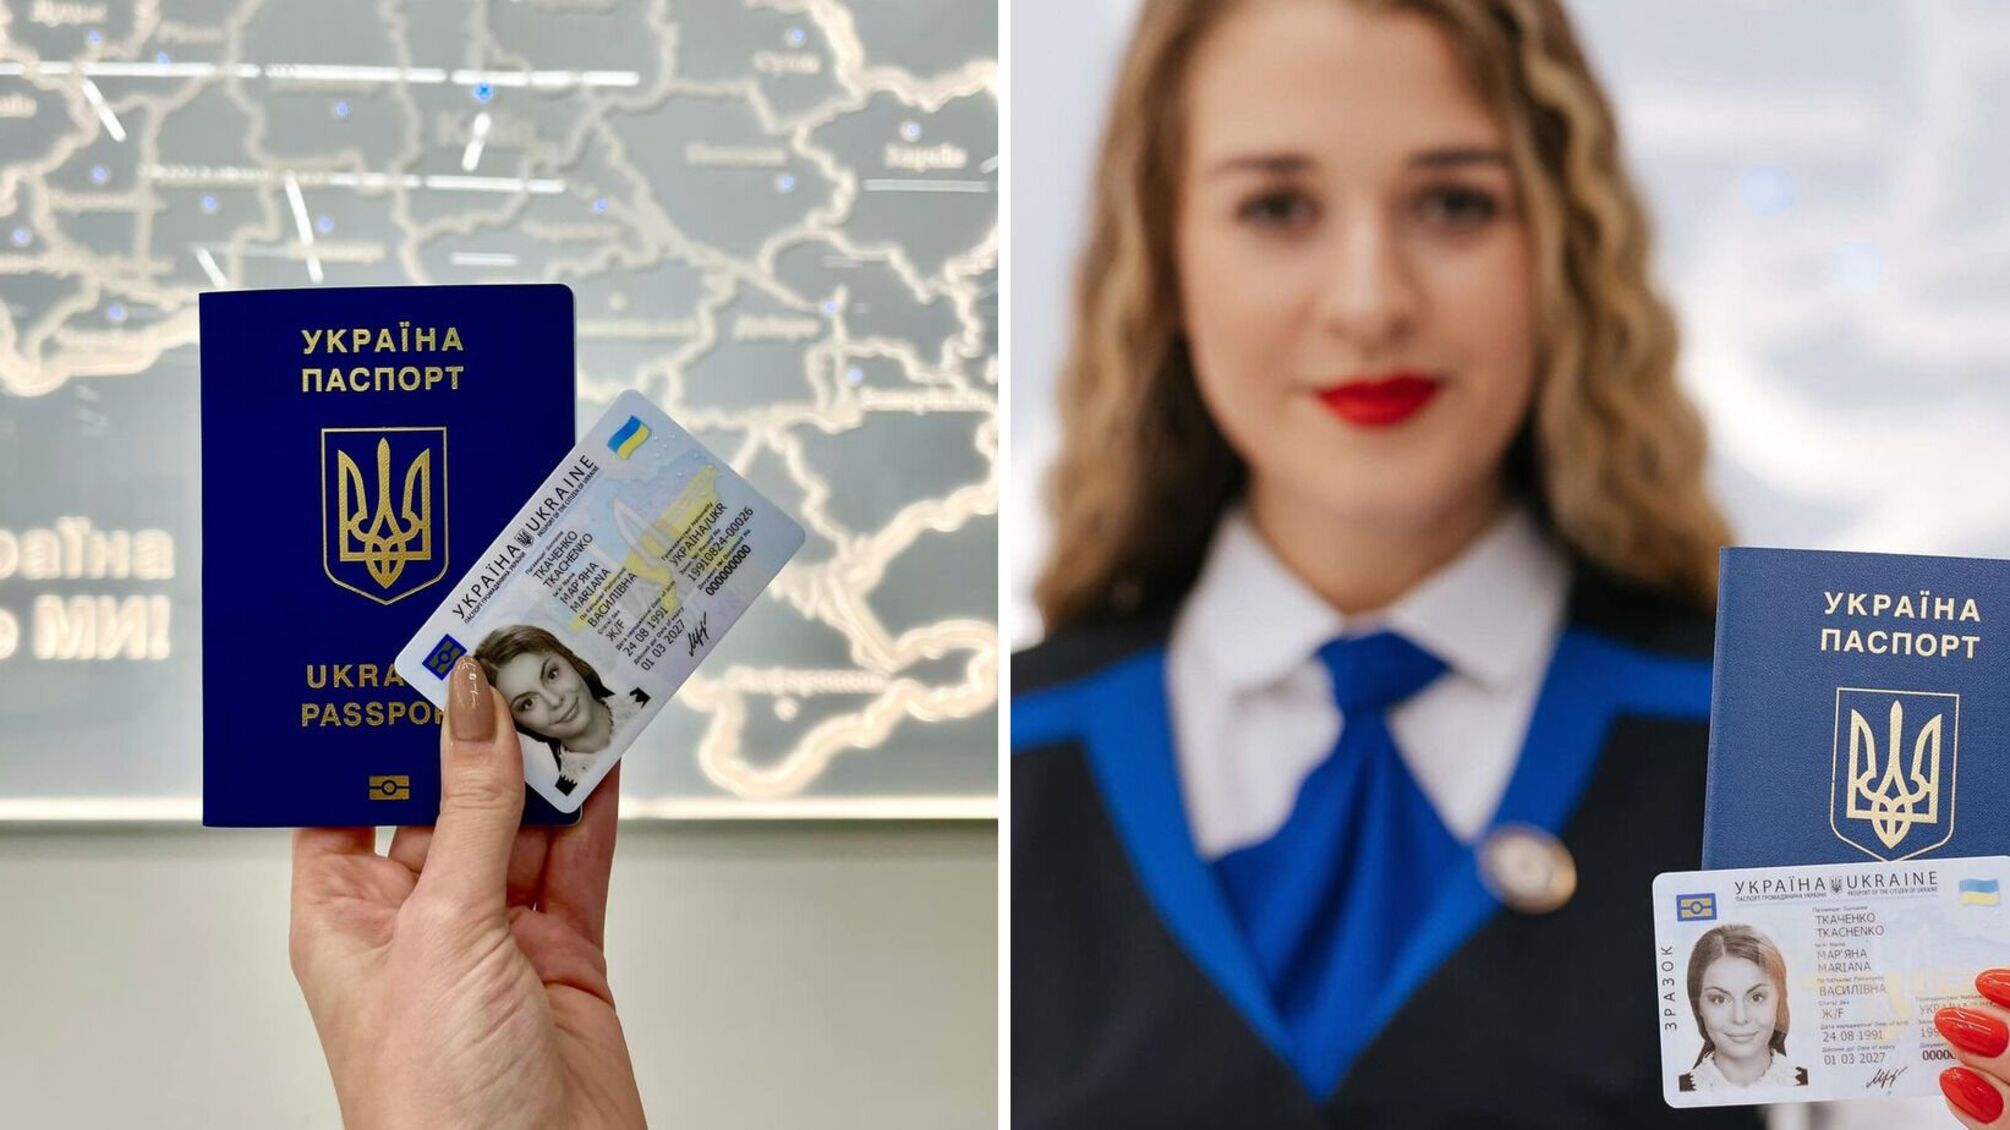 Центры обслуживания граждан «Паспортный сервис» Украины возобновляют работу